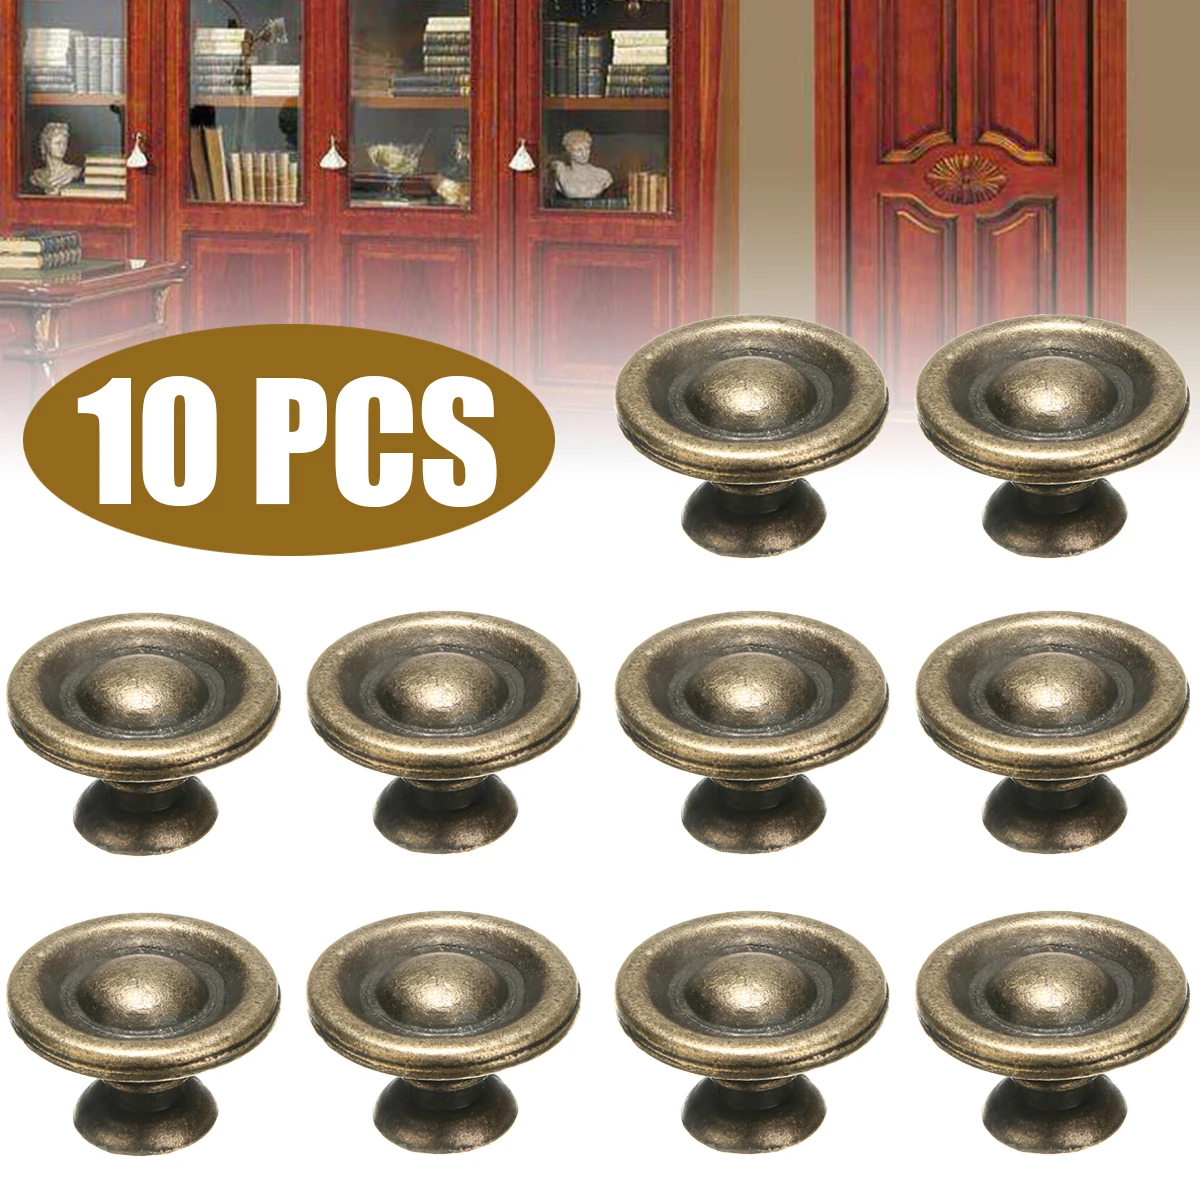 10 piezas de Latón Antiguo Perillas, Manijas de las Puertas del Dormitorio de la Cocina Cajones del Gabinete Gabinete Perillas de Muebles de Herramientas de Hardware 4